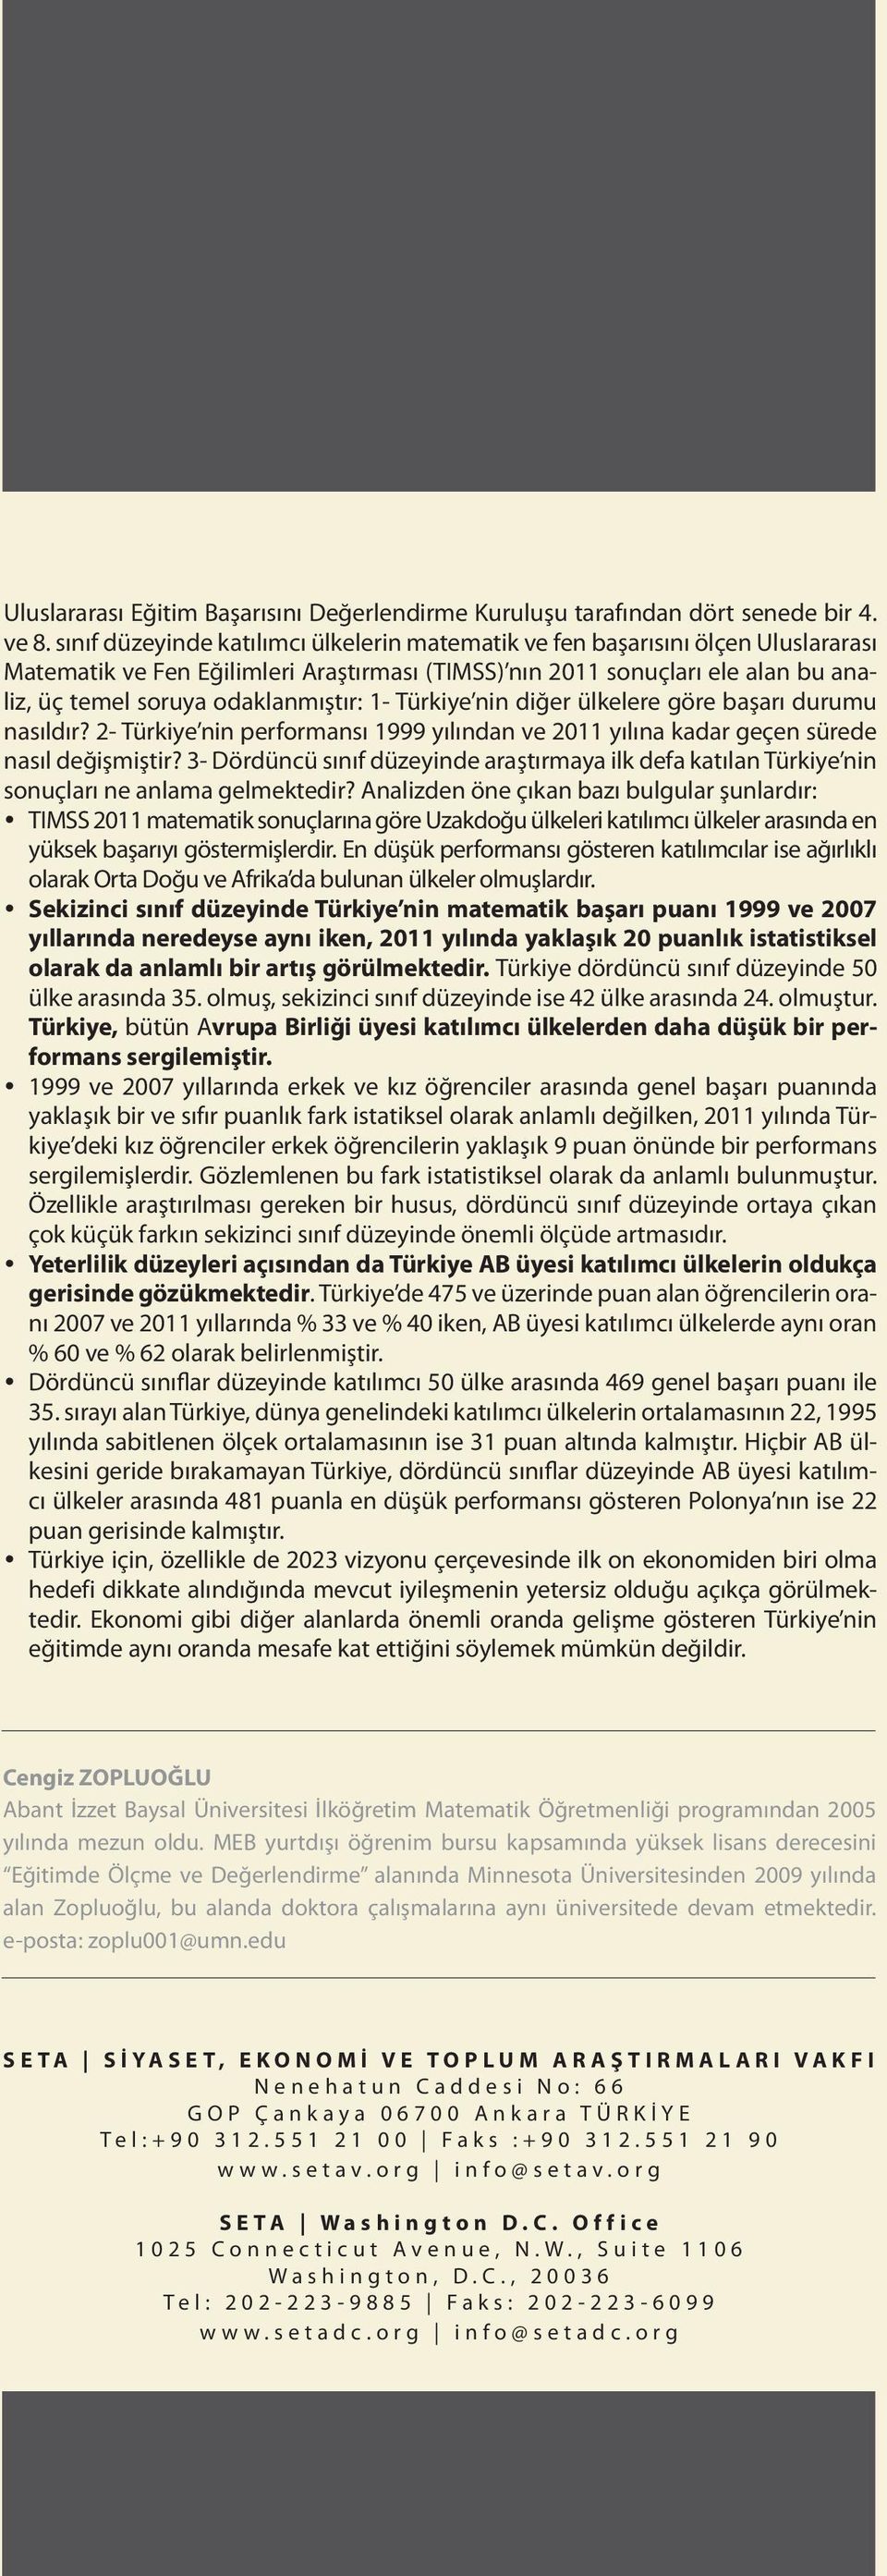 odaklanmıştır: 1- Türkiye nin diğer ülkelere göre başarı durumu nasıldır? 2- Türkiye nin performansı 1999 yılından ve 2011 yılına kadar geçen sürede nasıl değişmiştir?